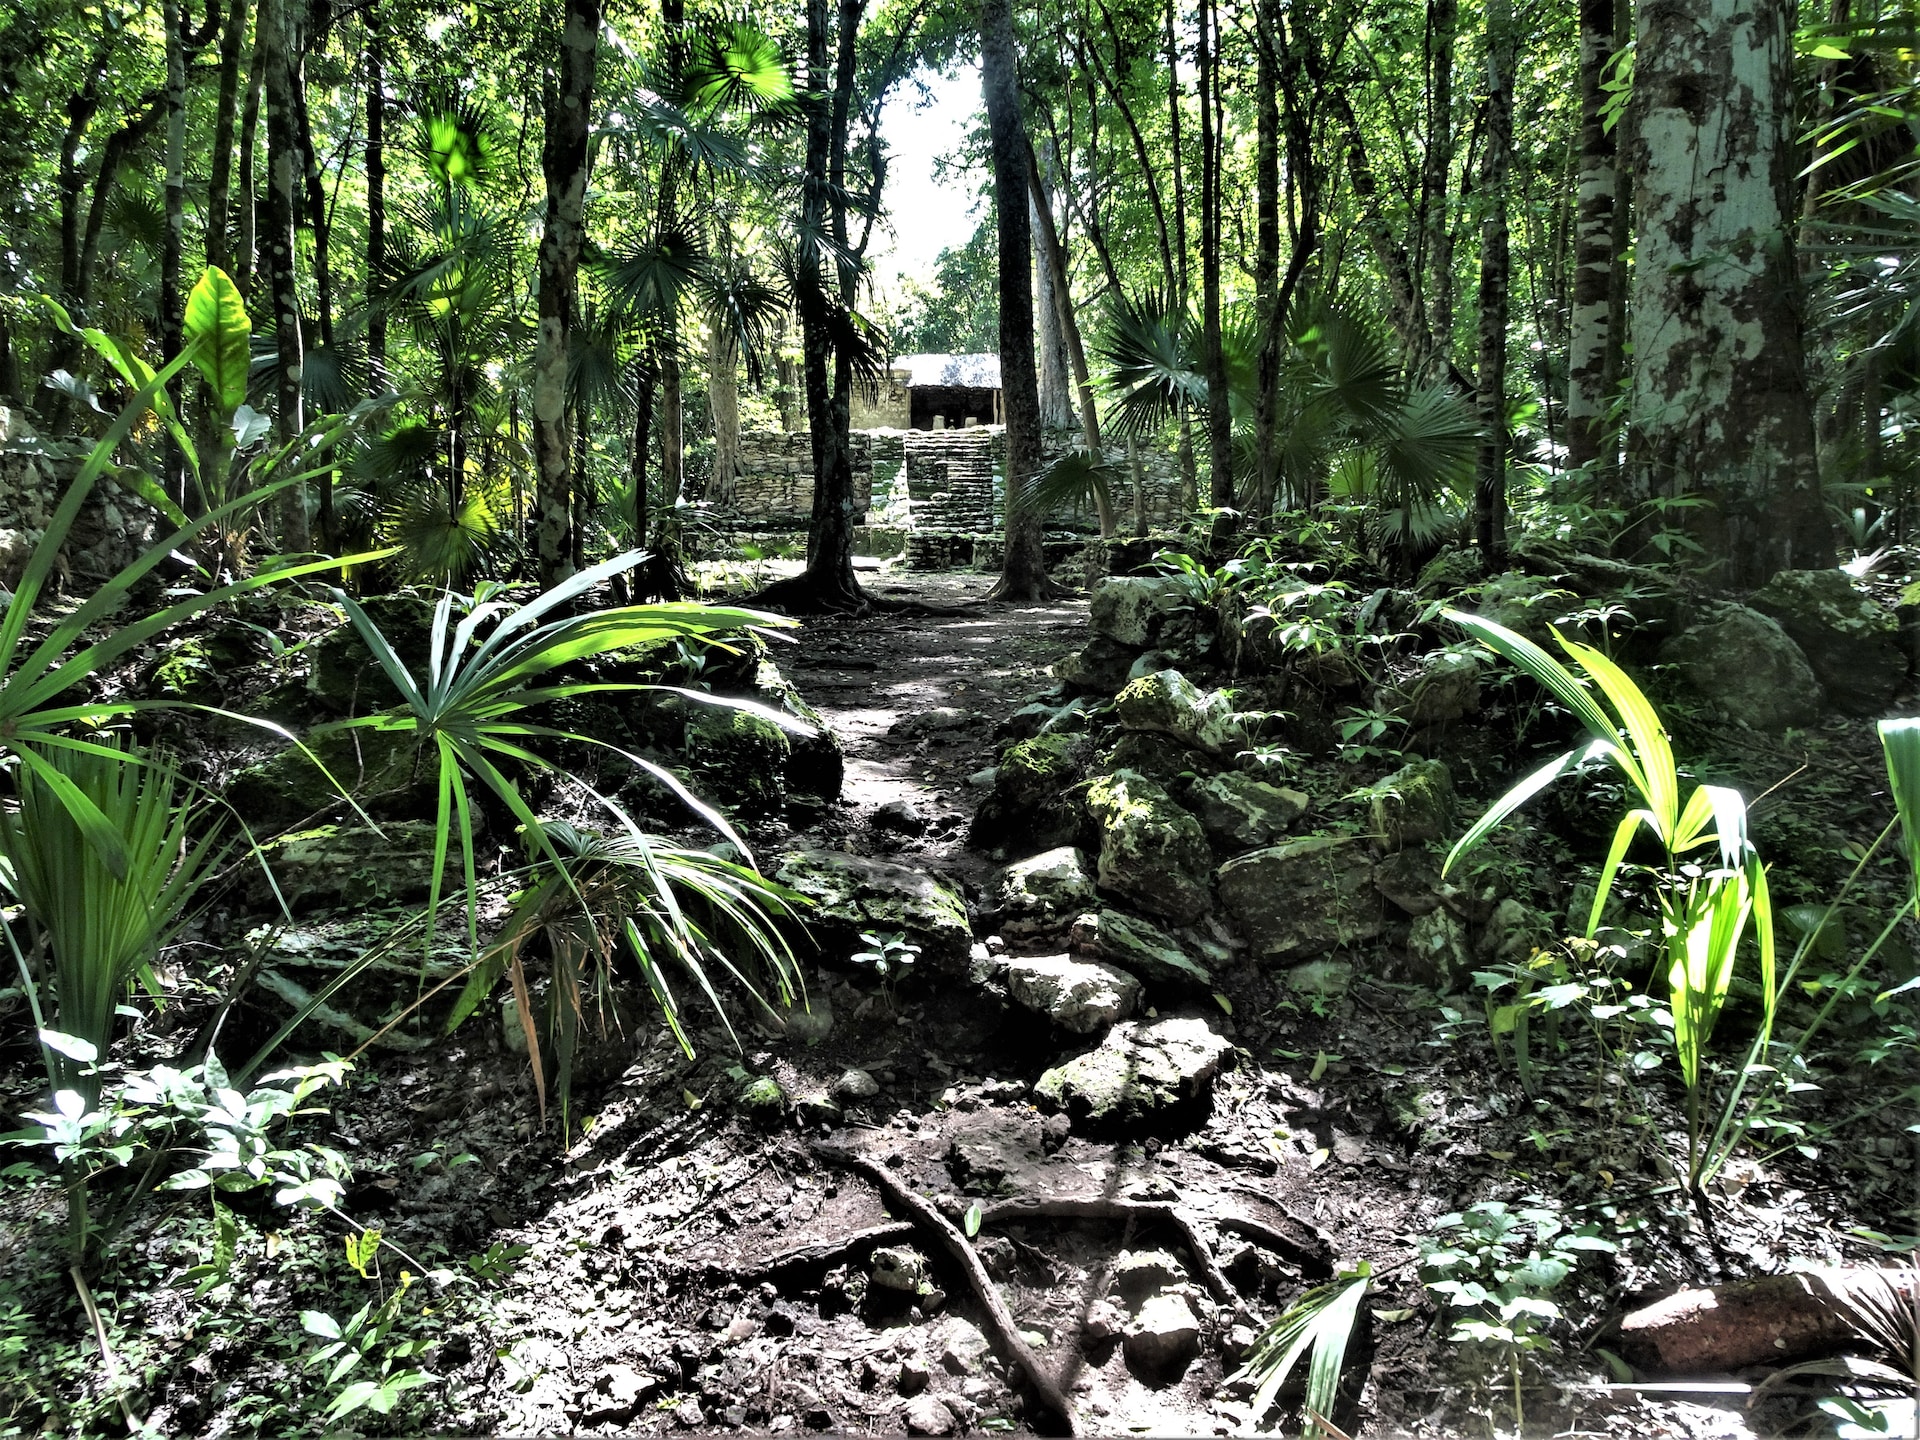 Ruins in a dense jungle. 